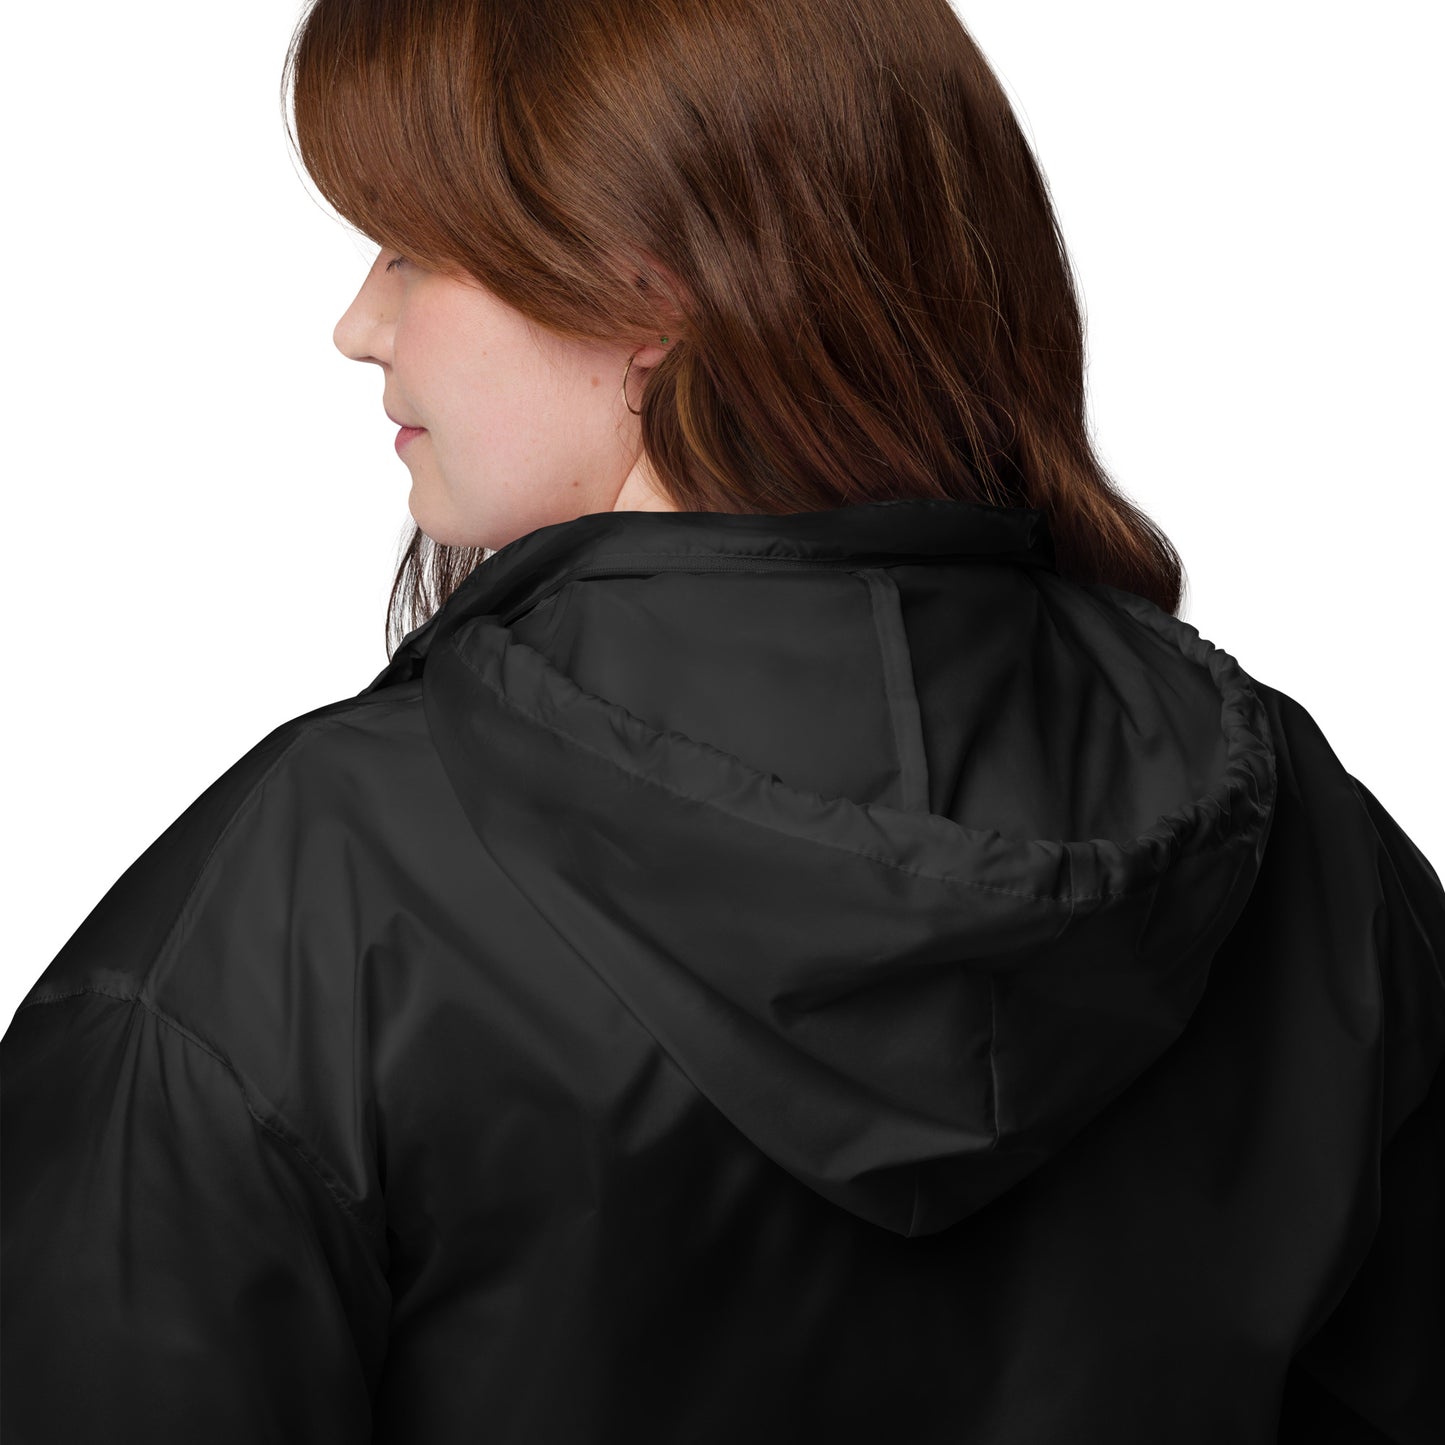 Vegan sportswear, Womens windbreaker jacket, women’s jackets, windbreaker jackets for women